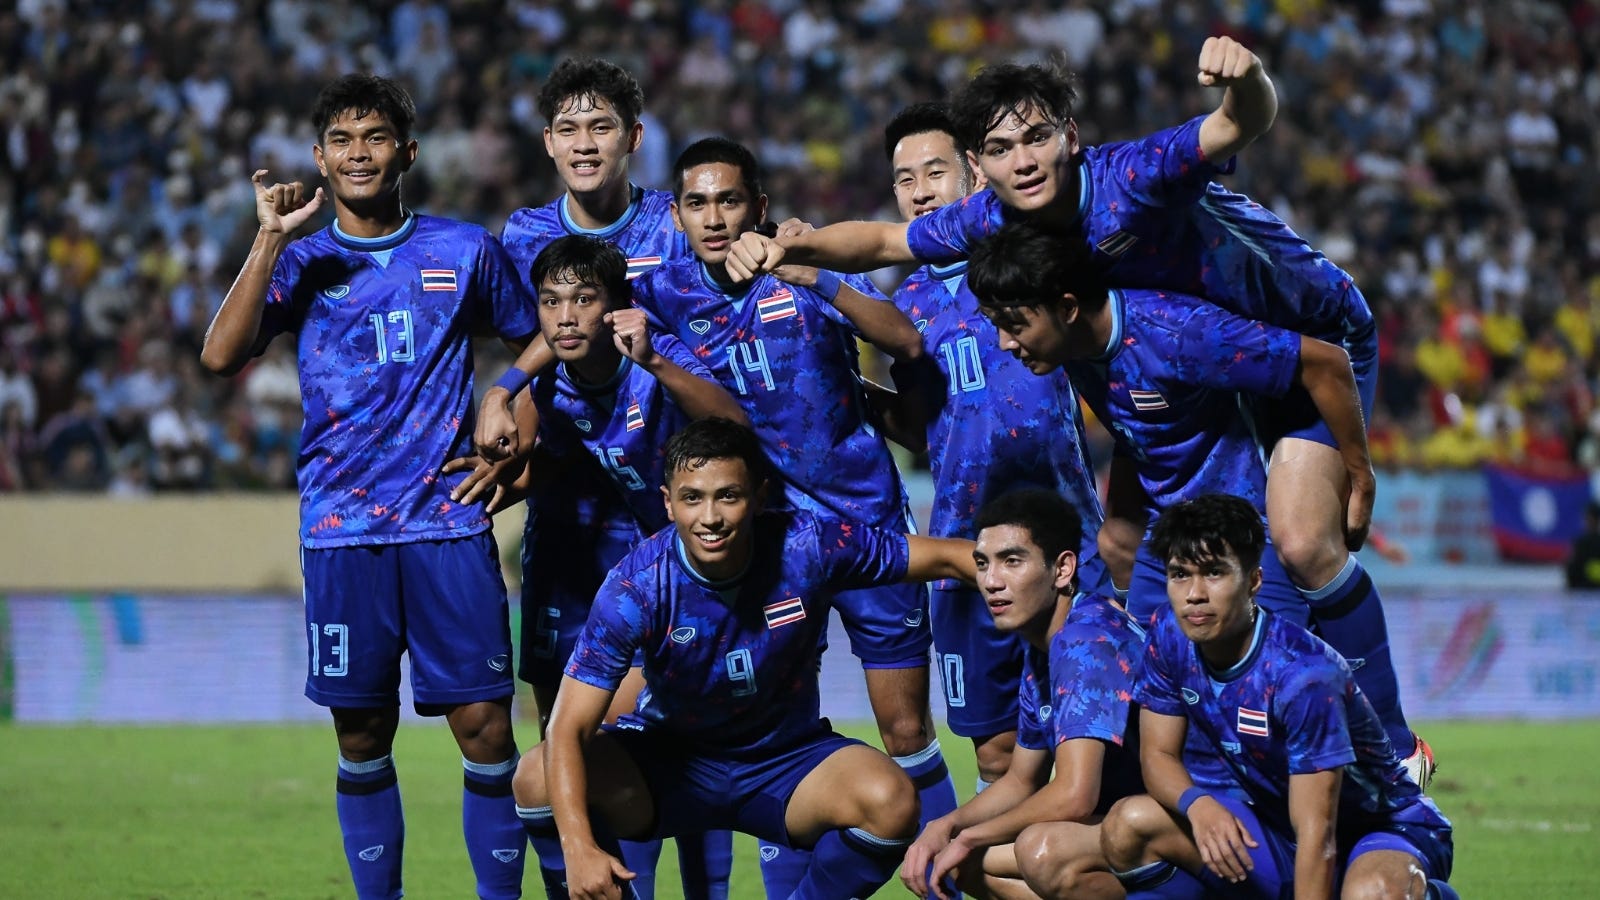 U23 Việt Nam: Đội tuyển U23 Việt Nam luôn là niềm tự hào của người dân Việt Nam. Họ đã có những màn trình diễn ấn tượng ở các giải đấu quốc tế gần đây. Nếu bạn muốn xem thêm về những khoảnh khắc đáng nhớ của đội bóng này, hãy xem hình ảnh liên quan đến U23 Việt Nam.